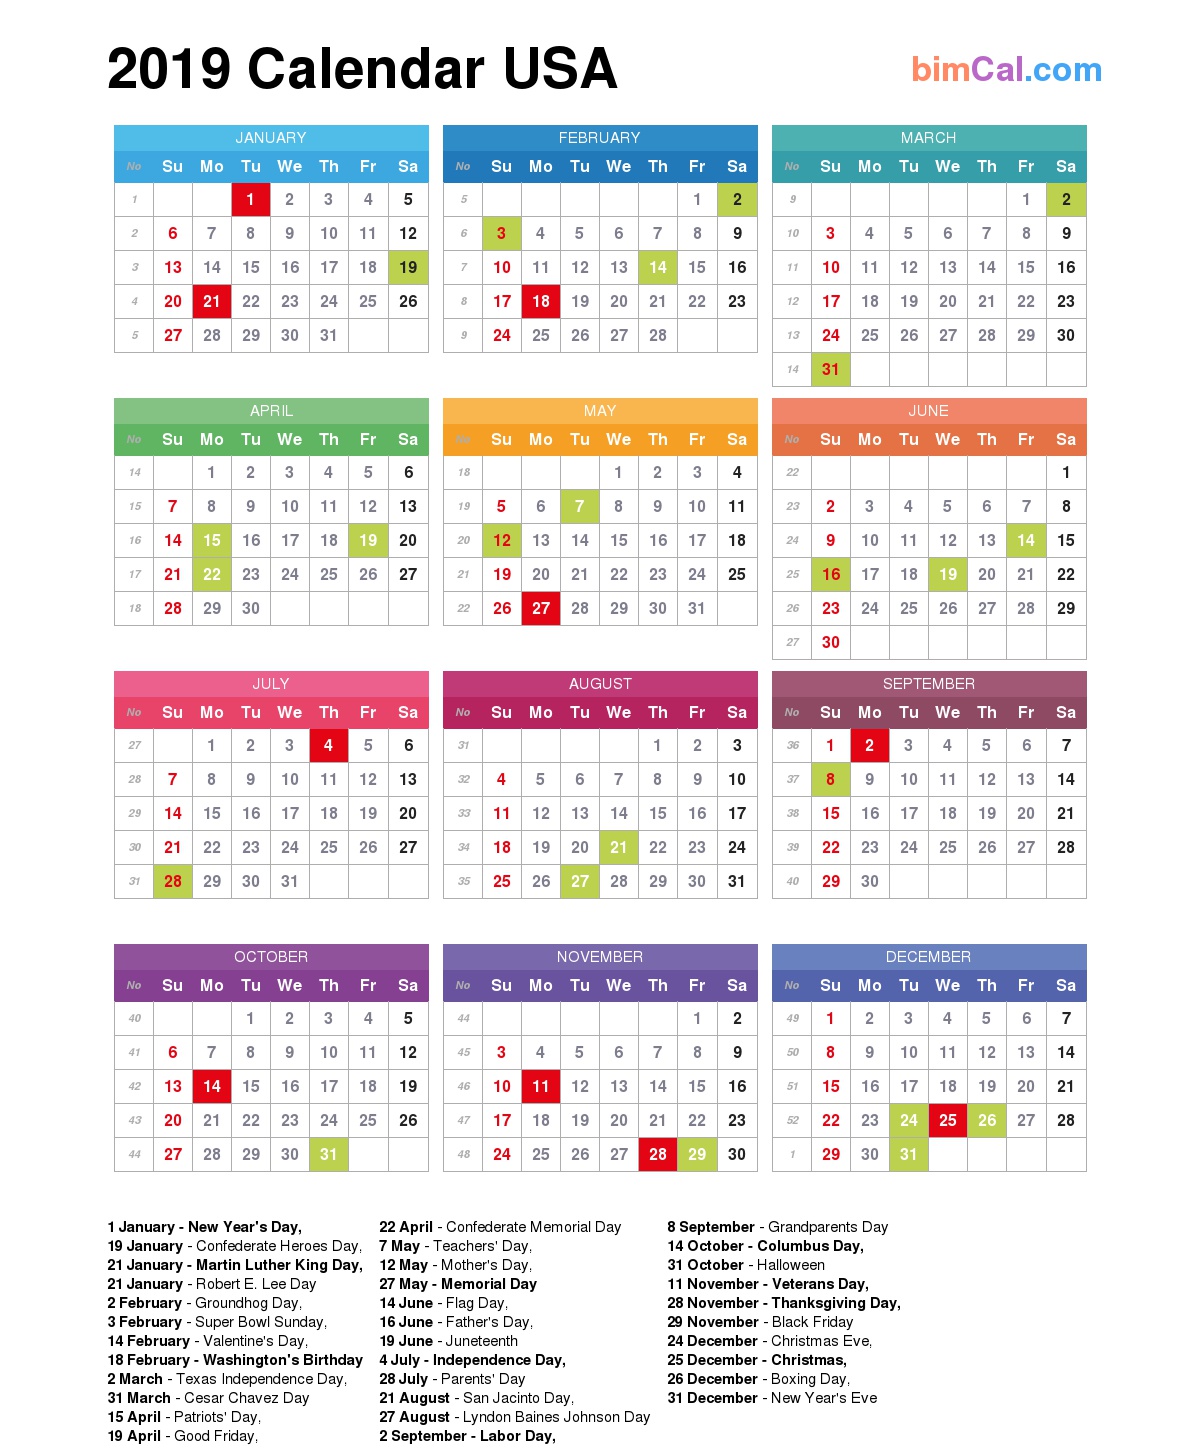 2019-calendar-usa-bimcal